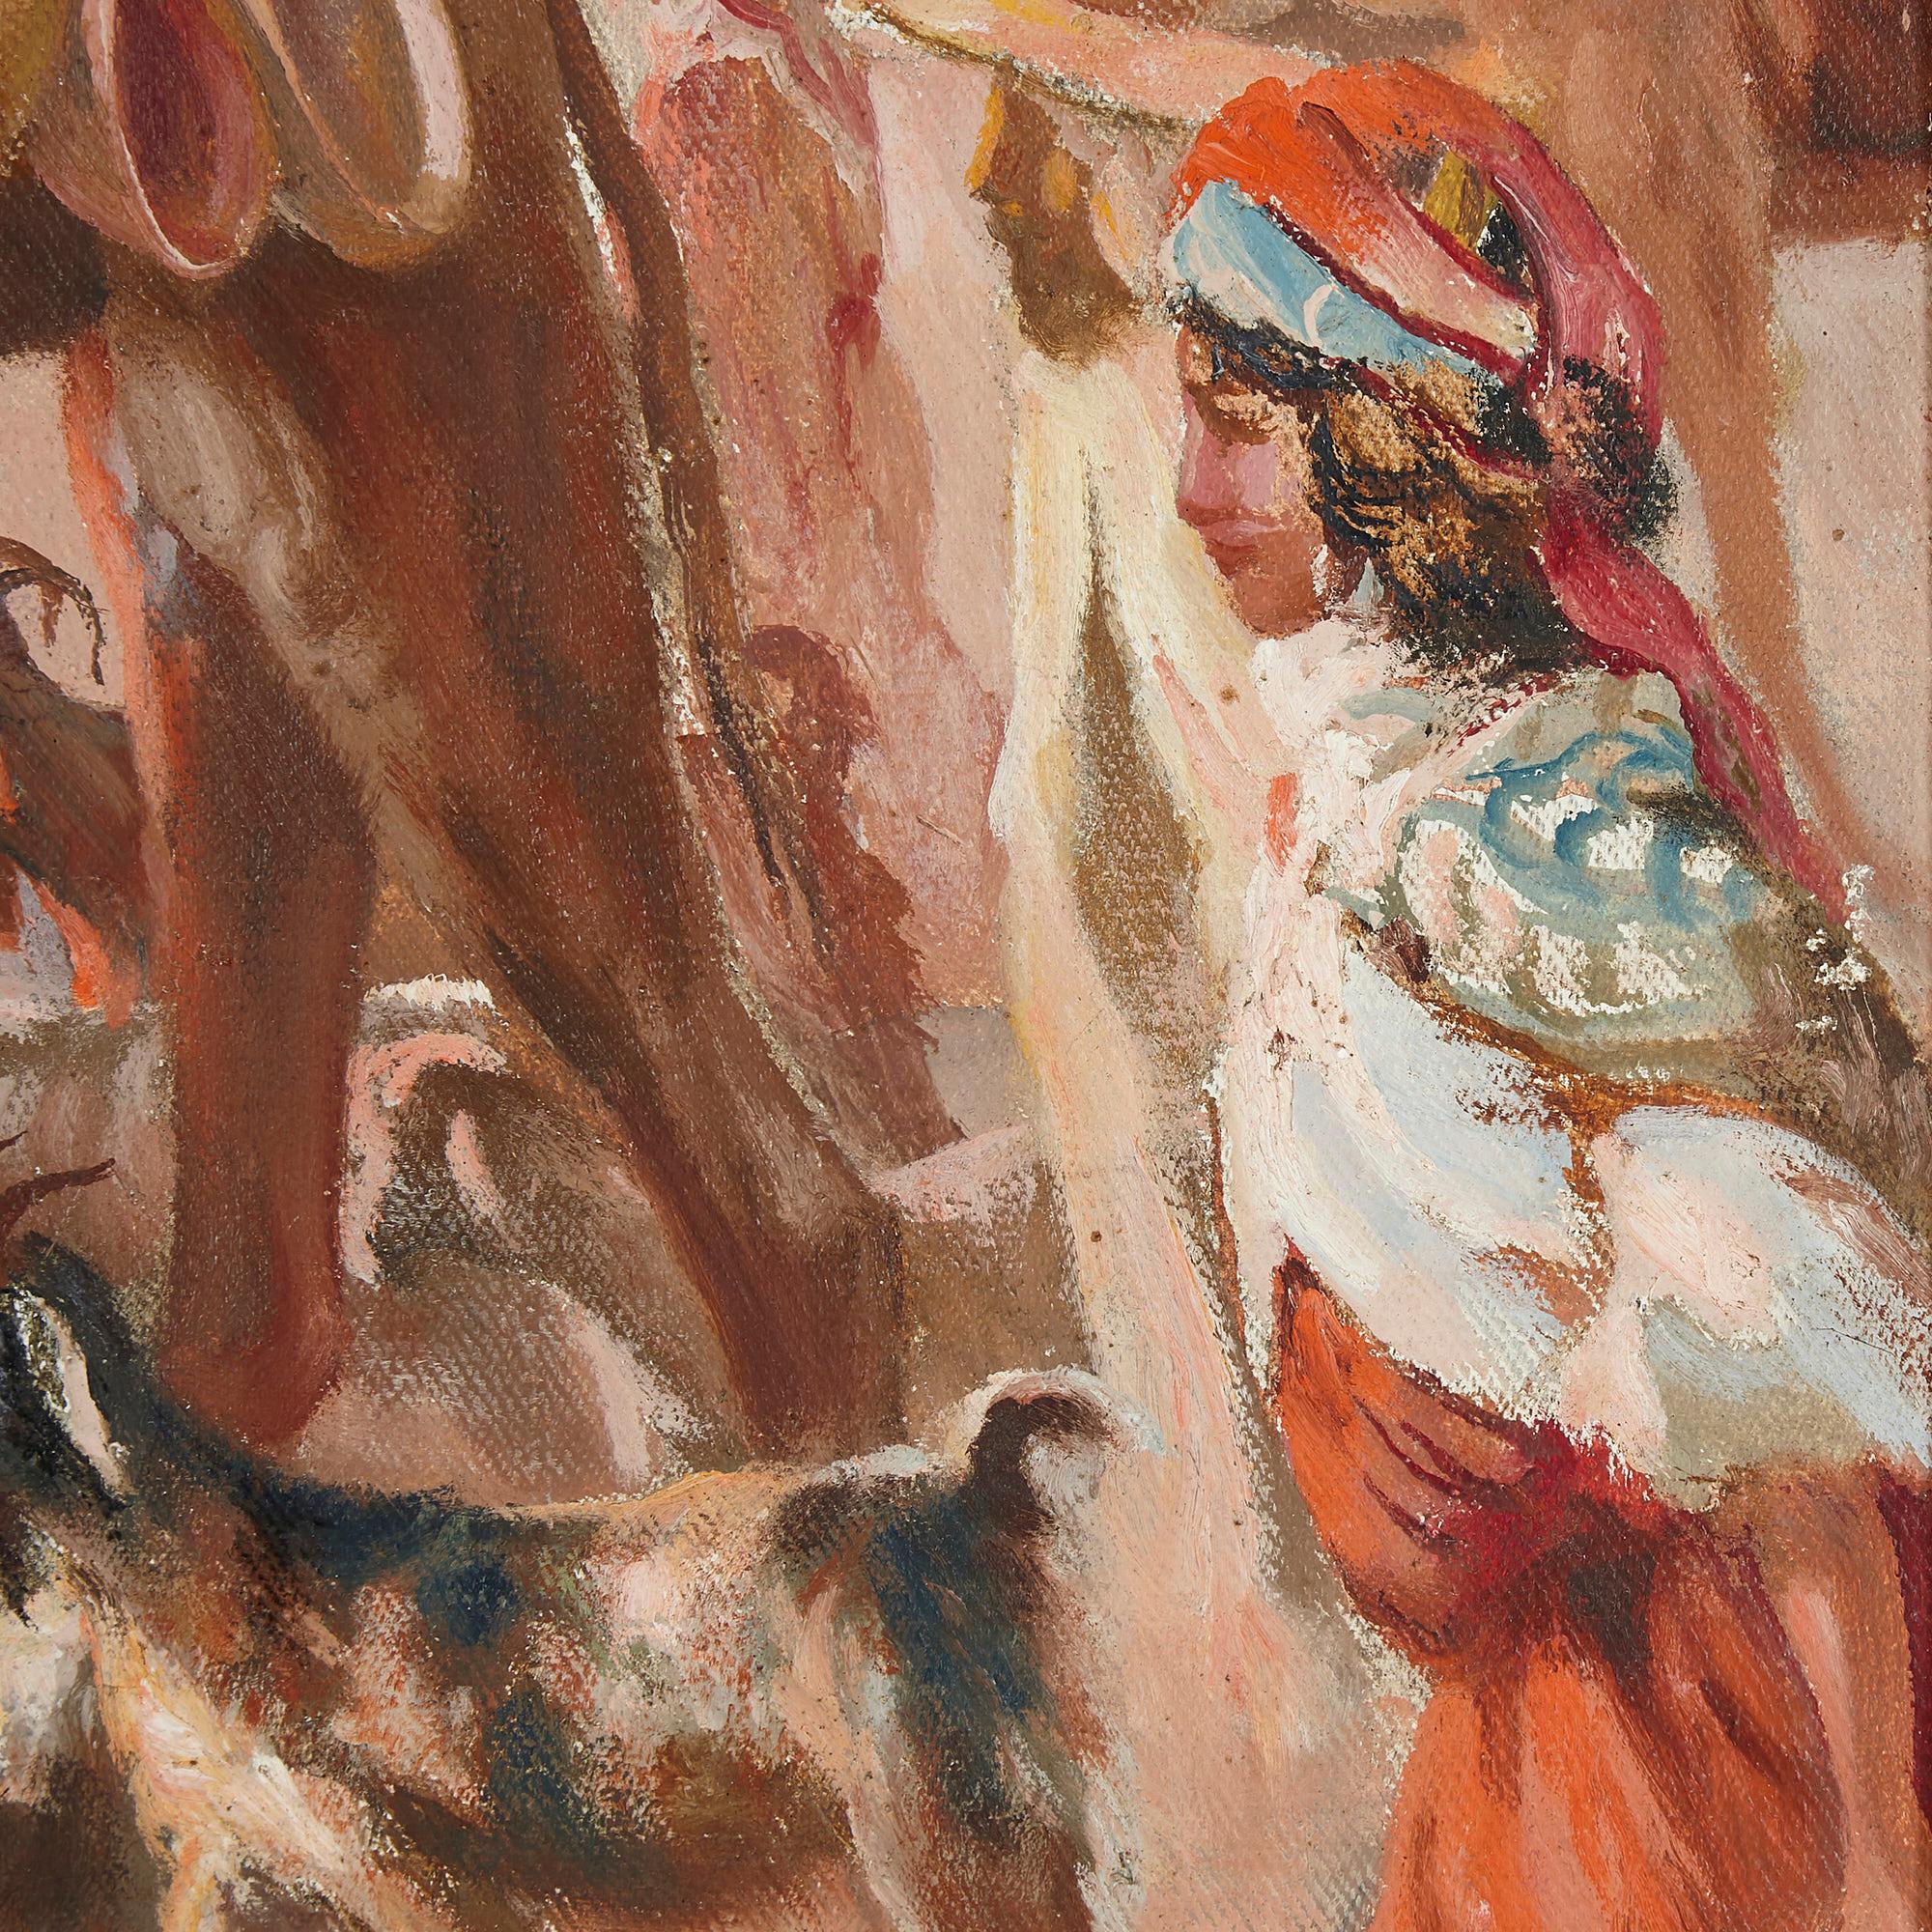 Antique Orientalist Oil on Board 'Desert Bedouin', by Spanish Artist Ortega
Spanish, early 20th Century
Frame: Height 51cm, width 59cm, depth 2cm
Board: Height 44cm, width 53cm, depth 0.5cm

Fluidly painted, this vibrant oil on board depicts a dusty